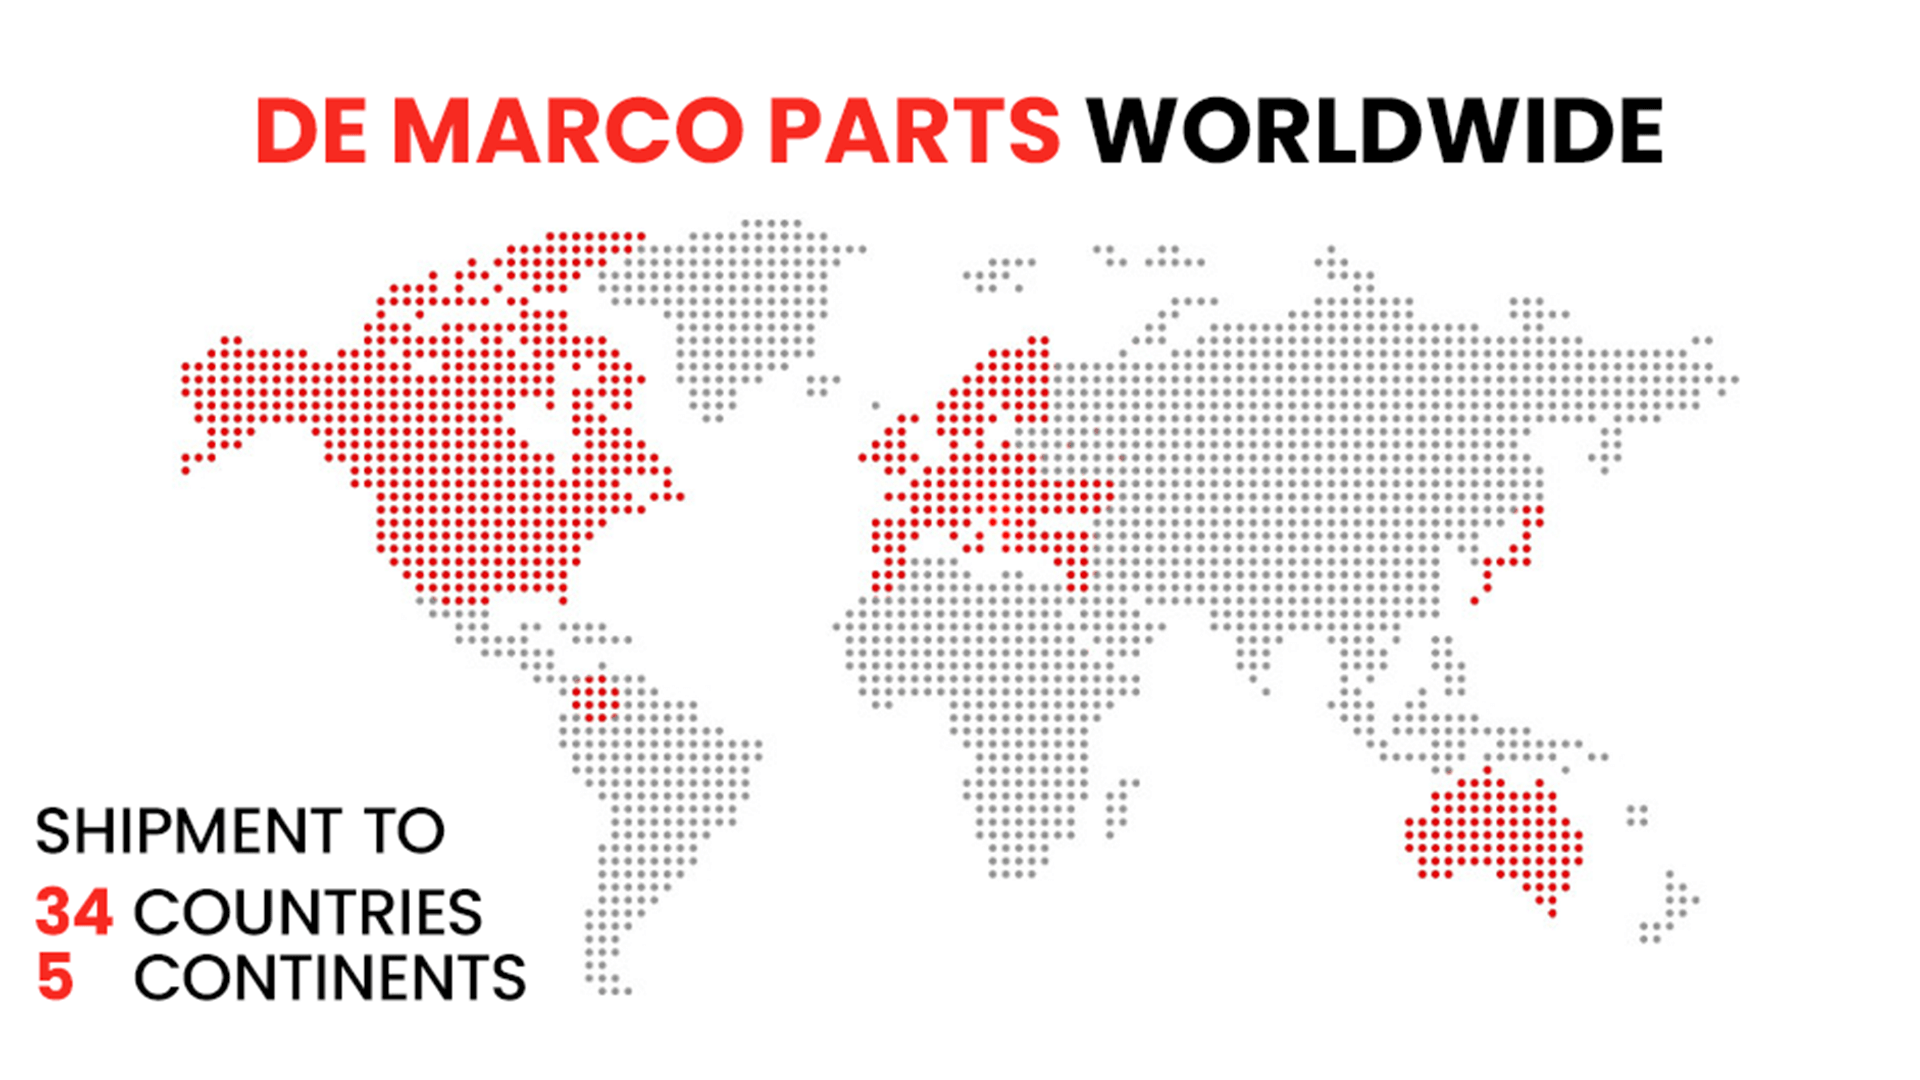 De Marco Parts shipping worldwide